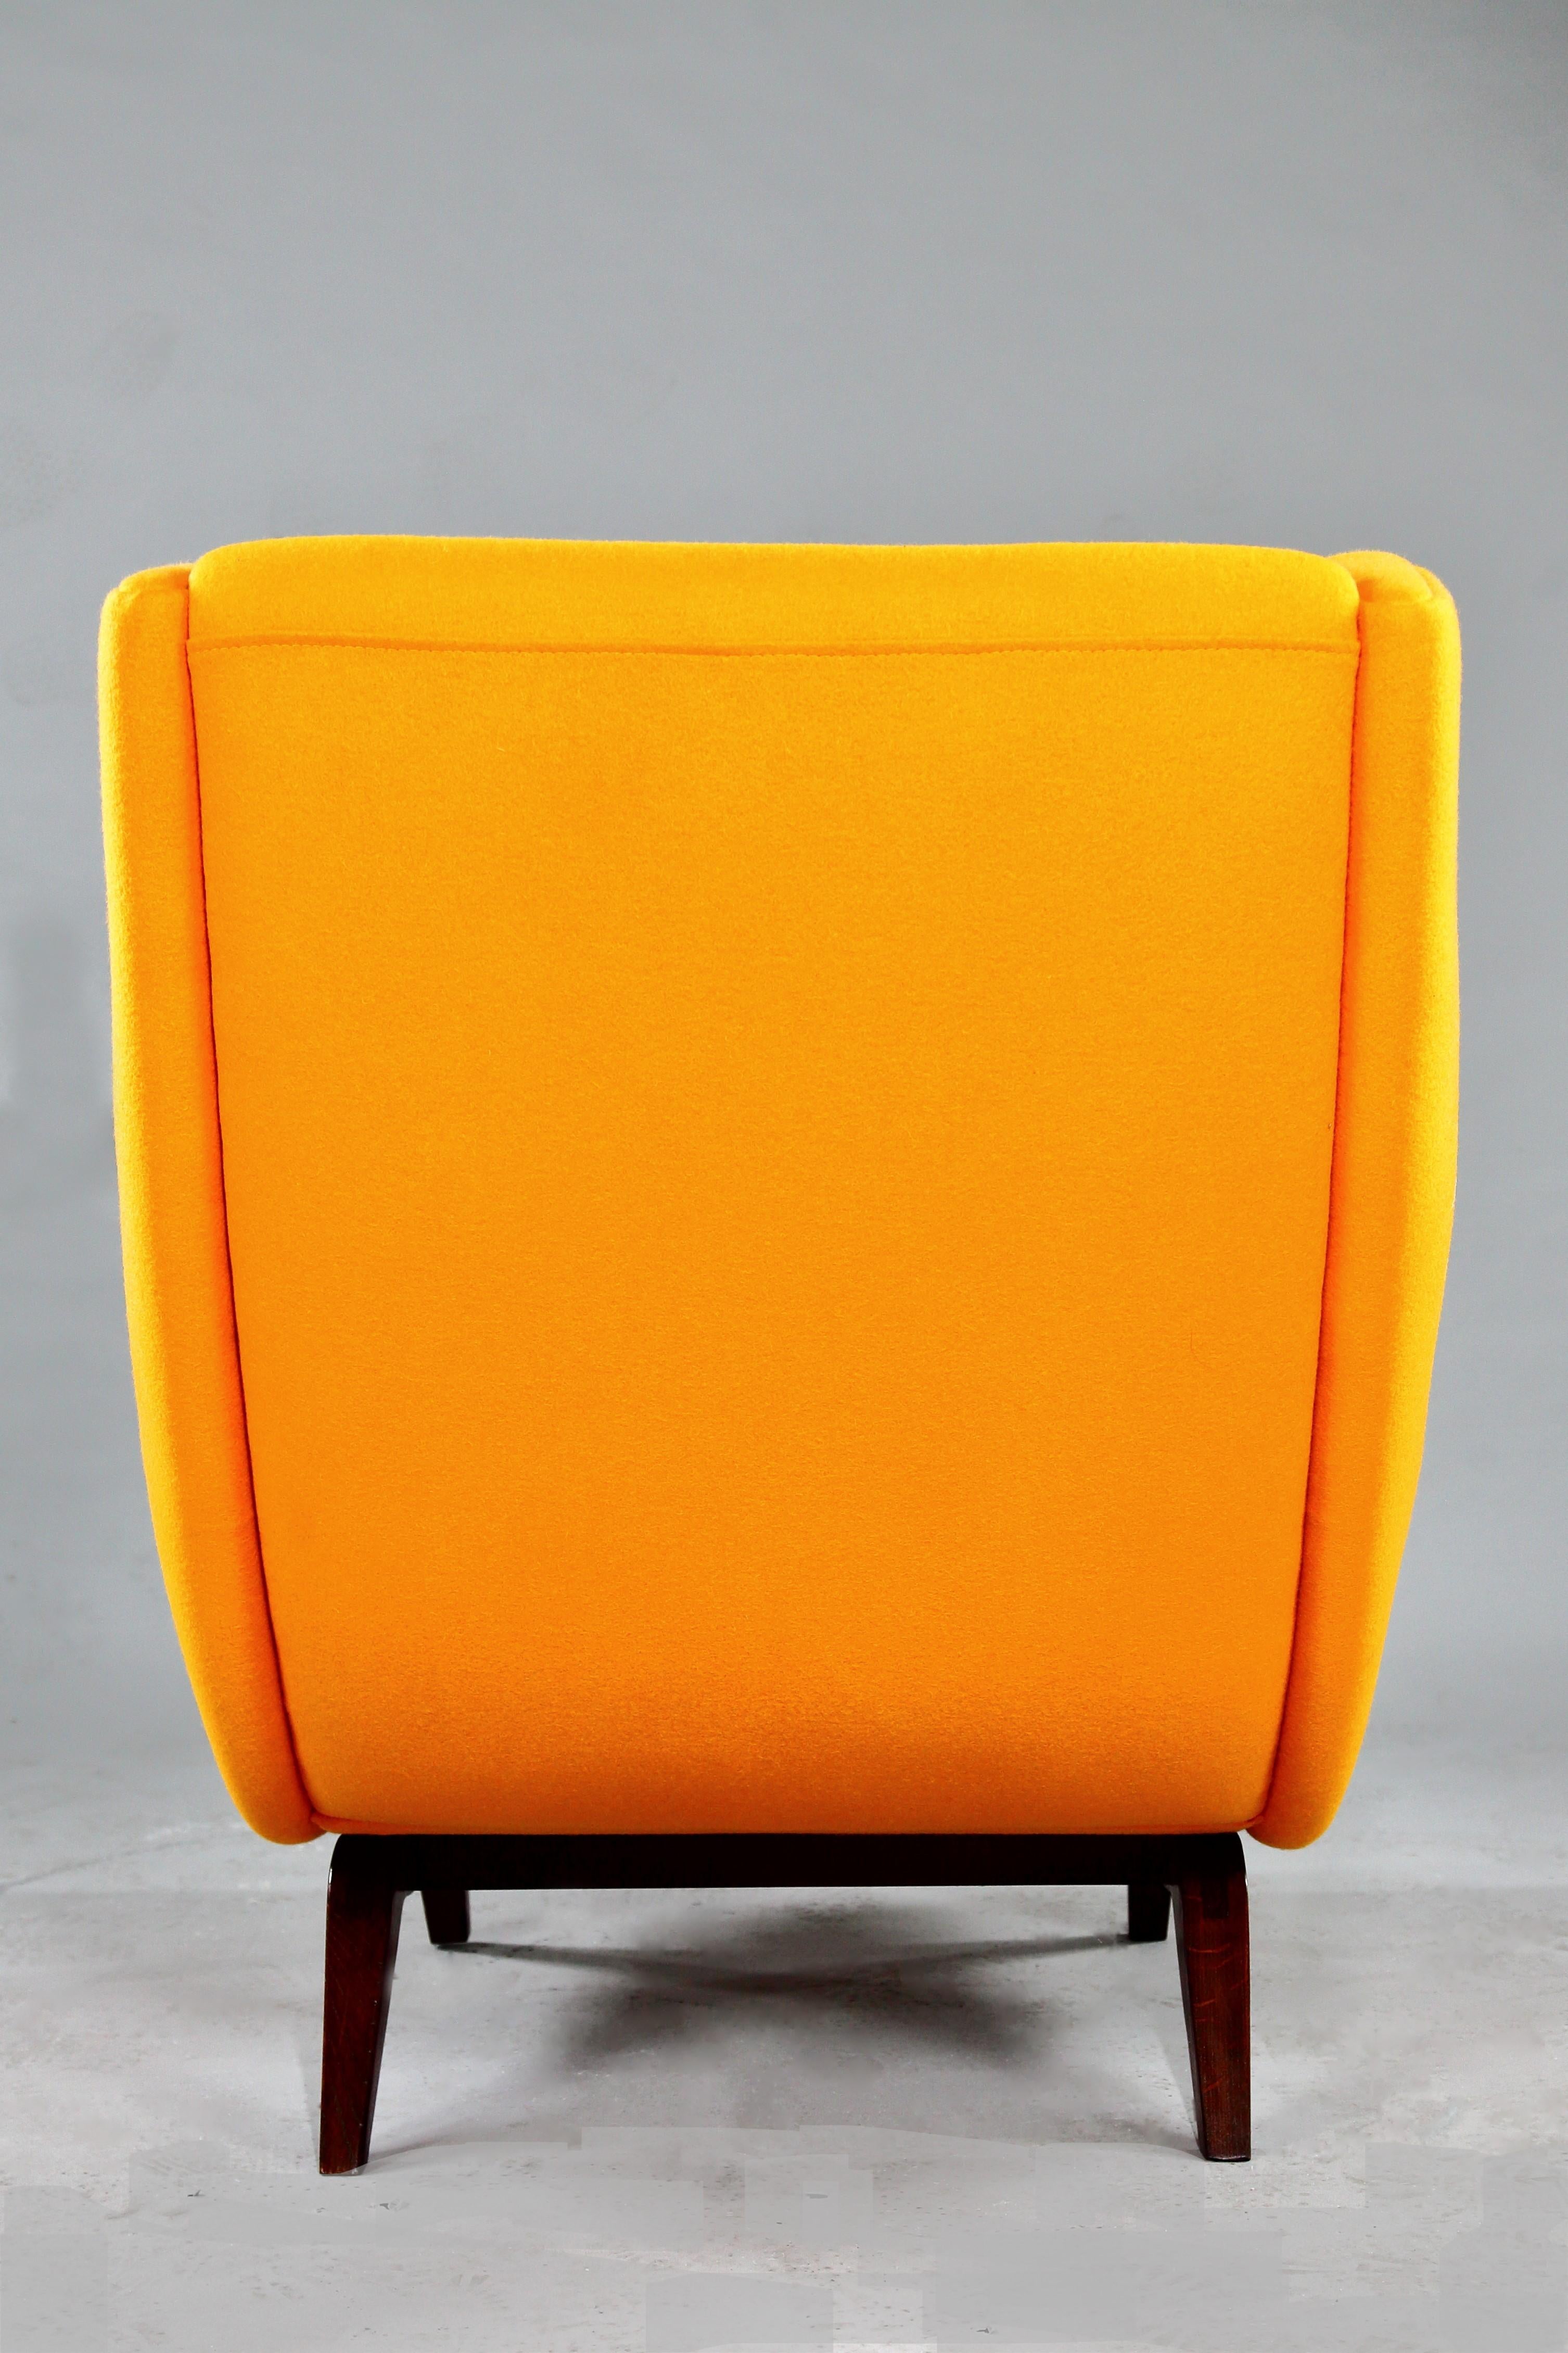 1950 Illum Wikkelsø Wingback Chair 'Model 110' Teak Wood Dominique Kieffer Wool For Sale 3